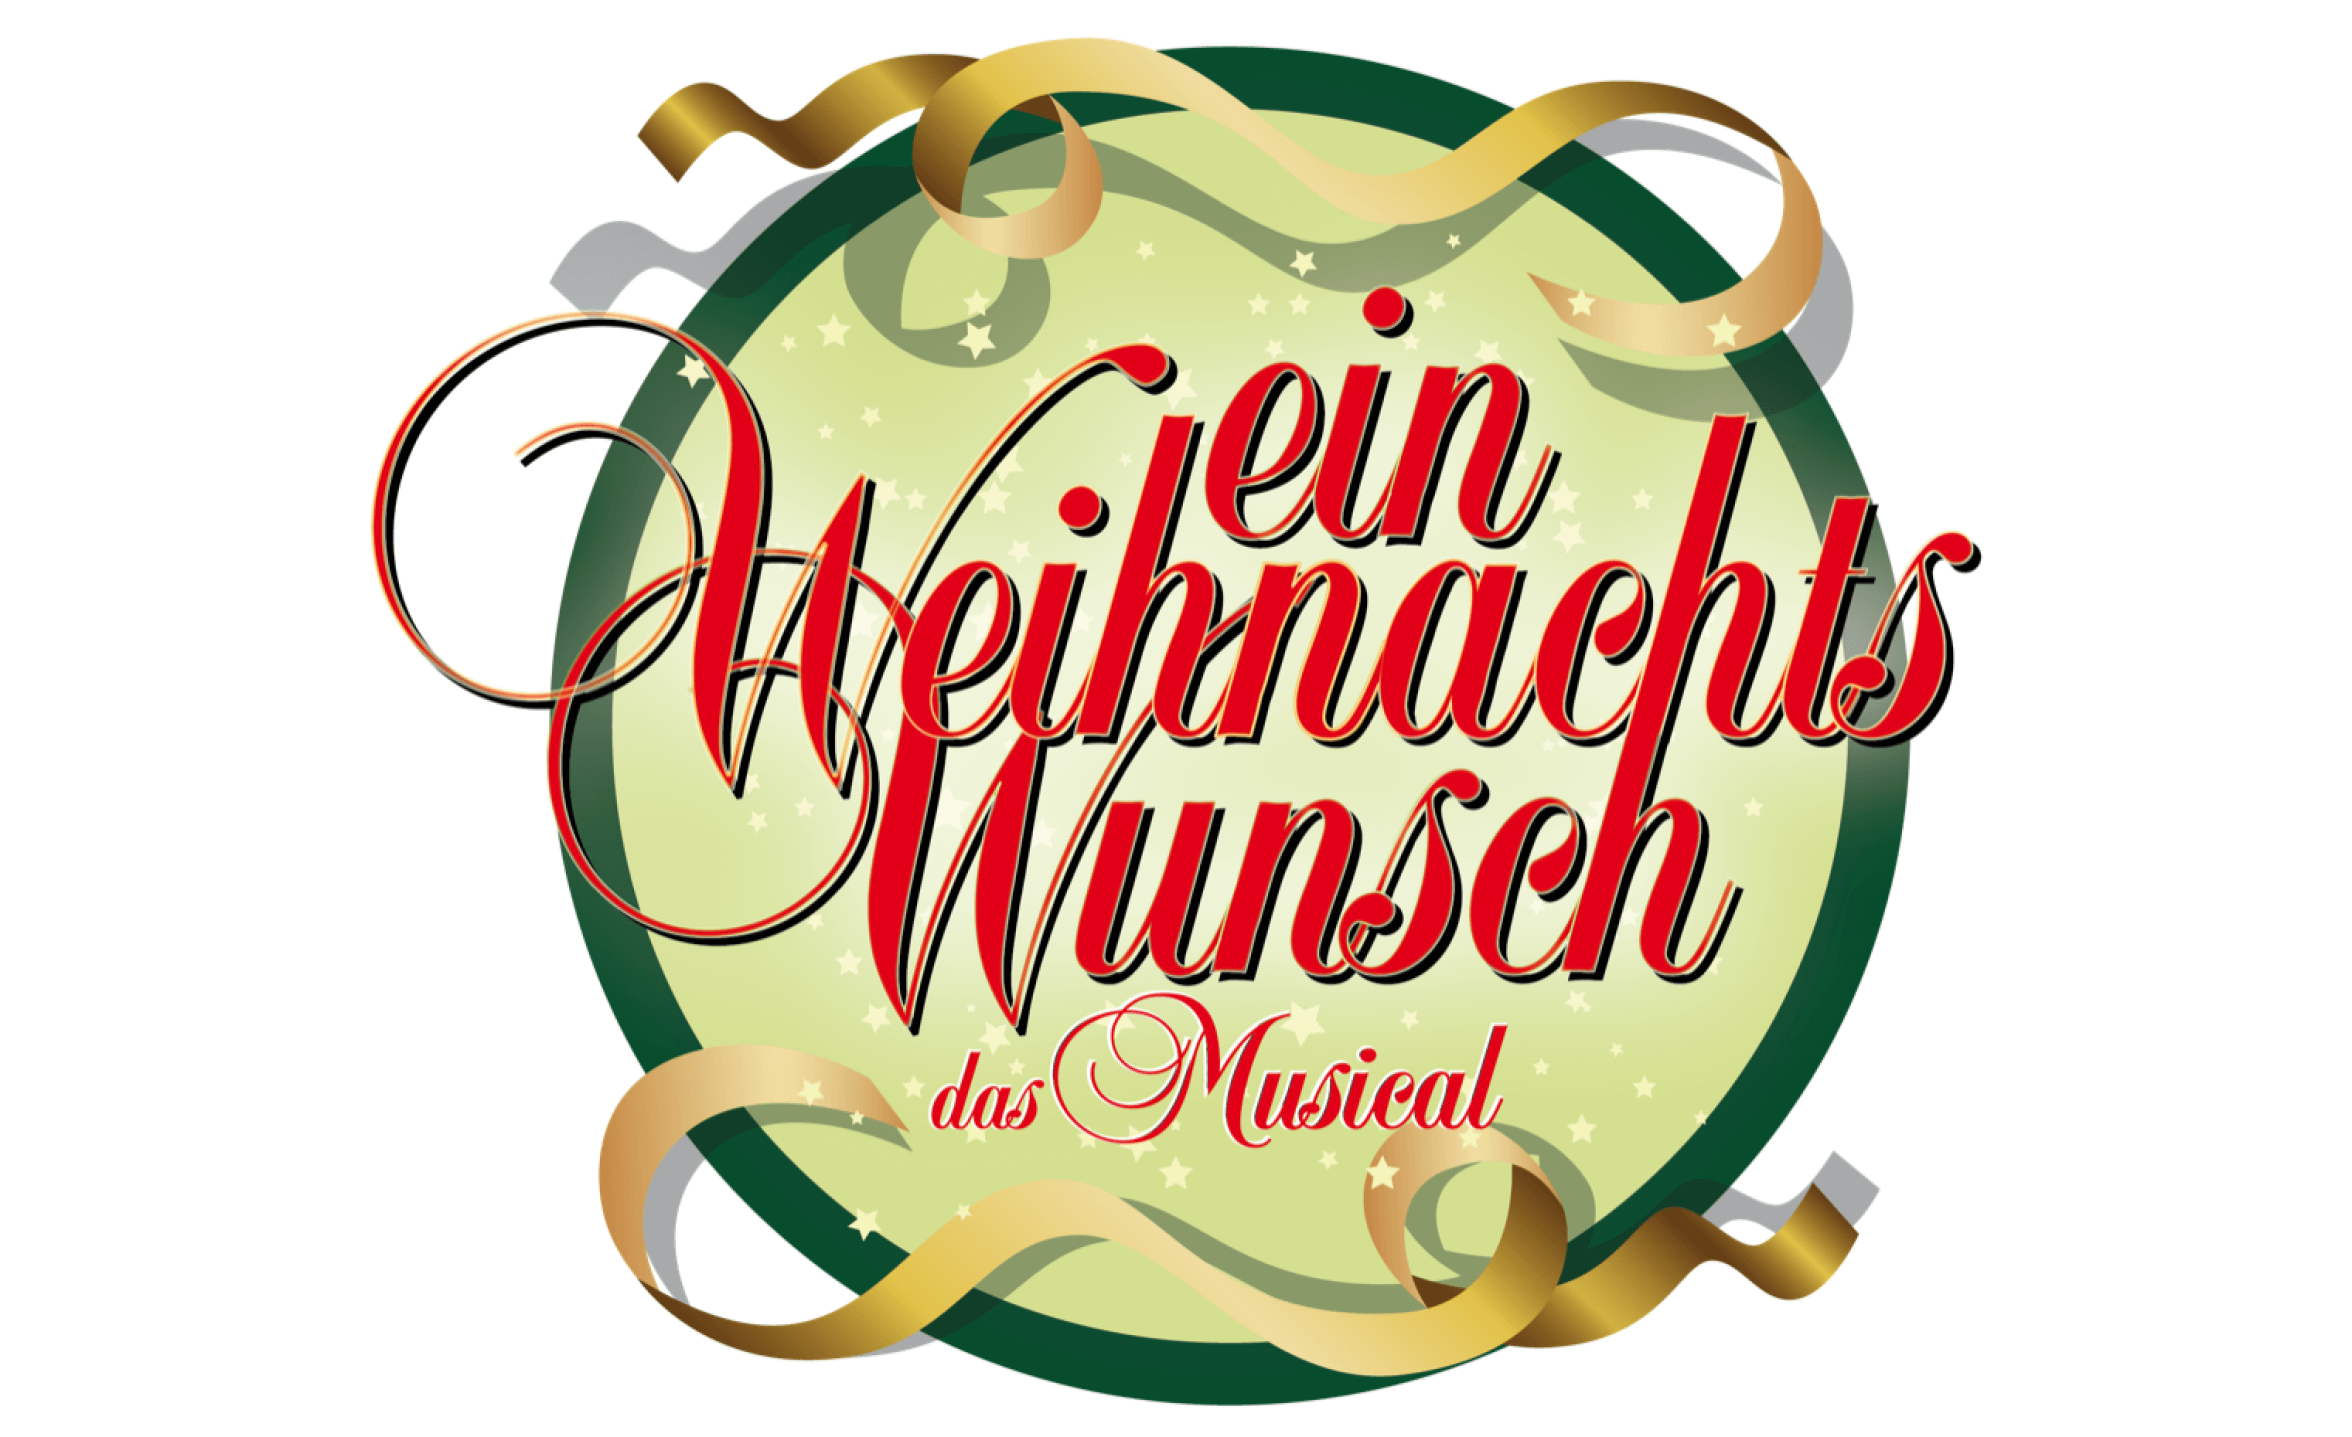 Event-Image for 'Ein Weihnachtswunsch - das Musical, 10.12.22 um 14:00 Uhr'